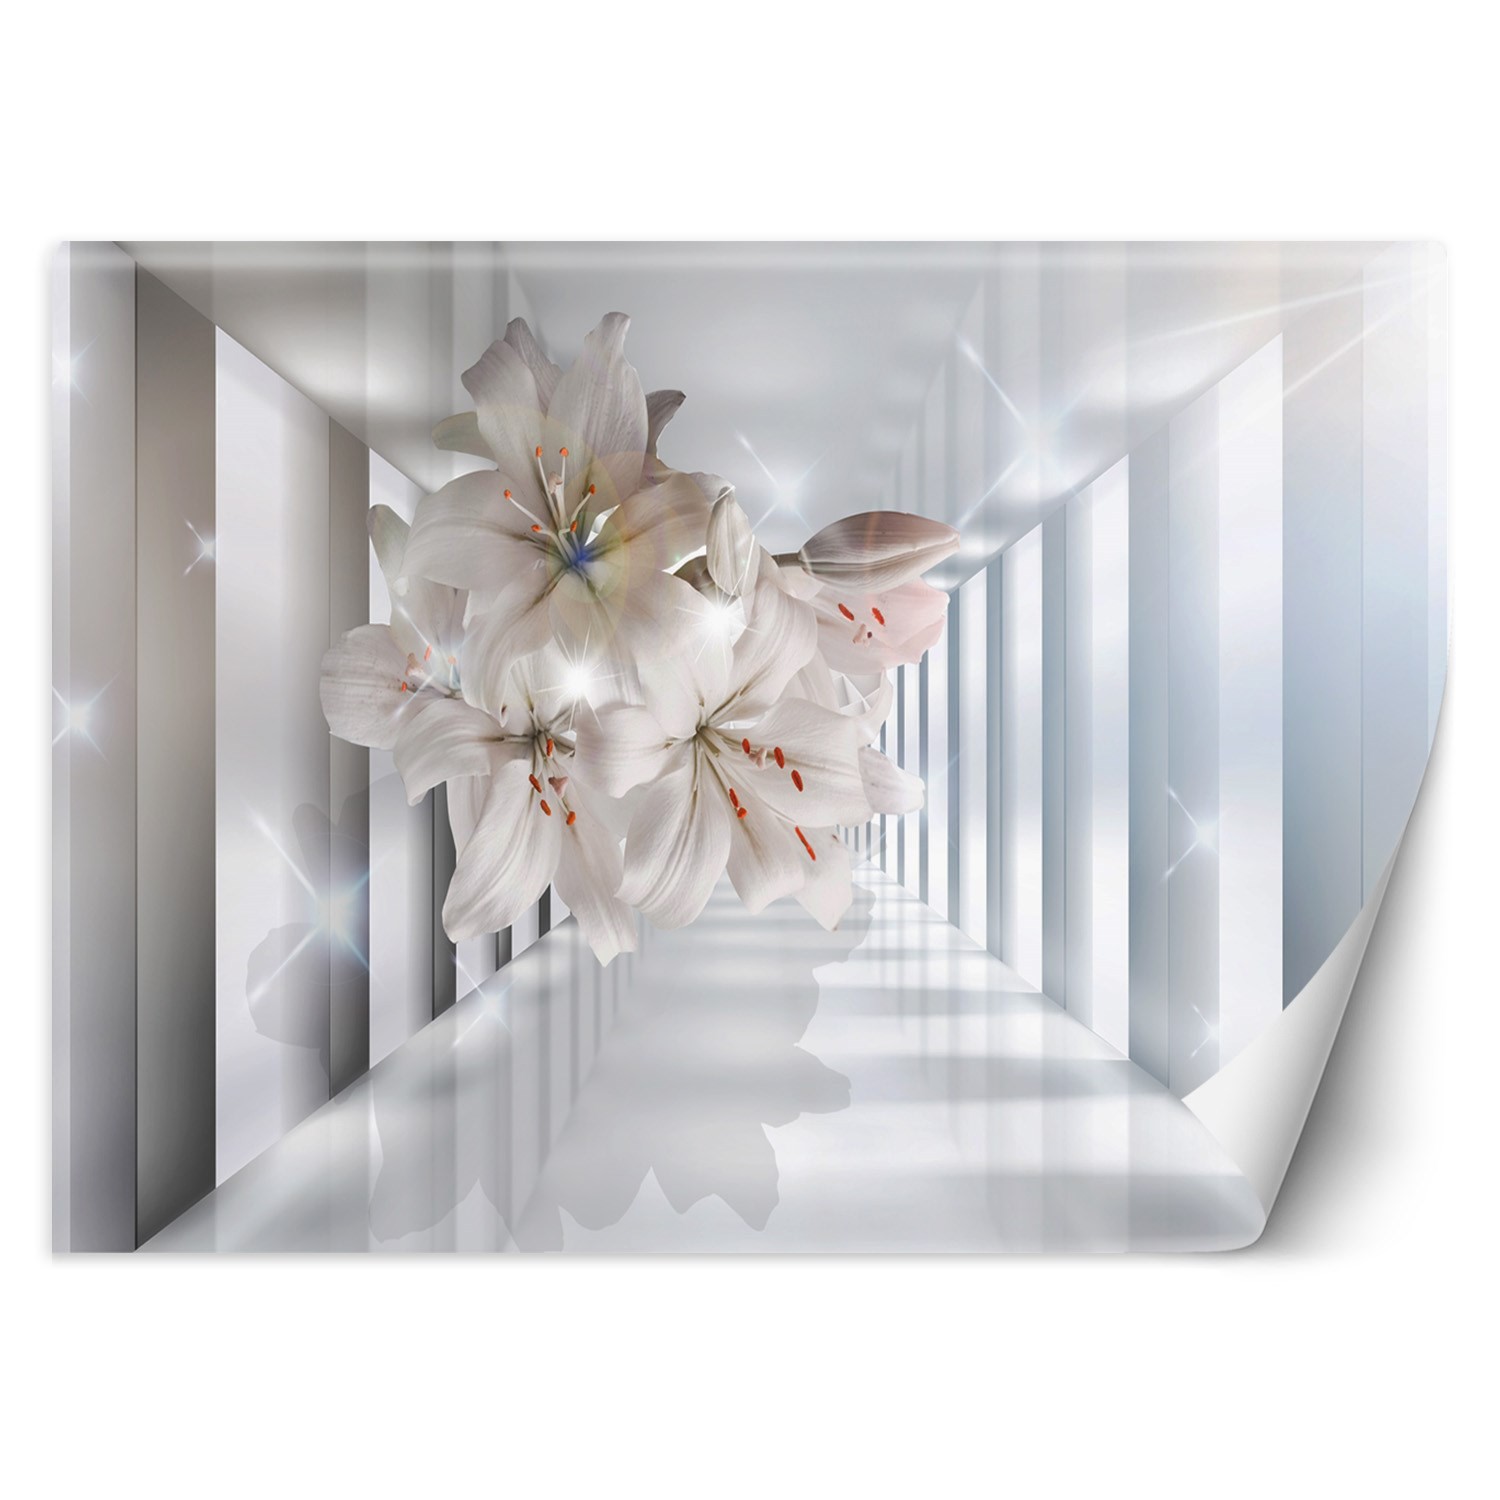 Trend24 – Behang – Bloemen In De Corridor 3D – Behangpapier – Fotobehang 3D – Behang Woonkamer – 300×210 cm – Incl. behanglijm